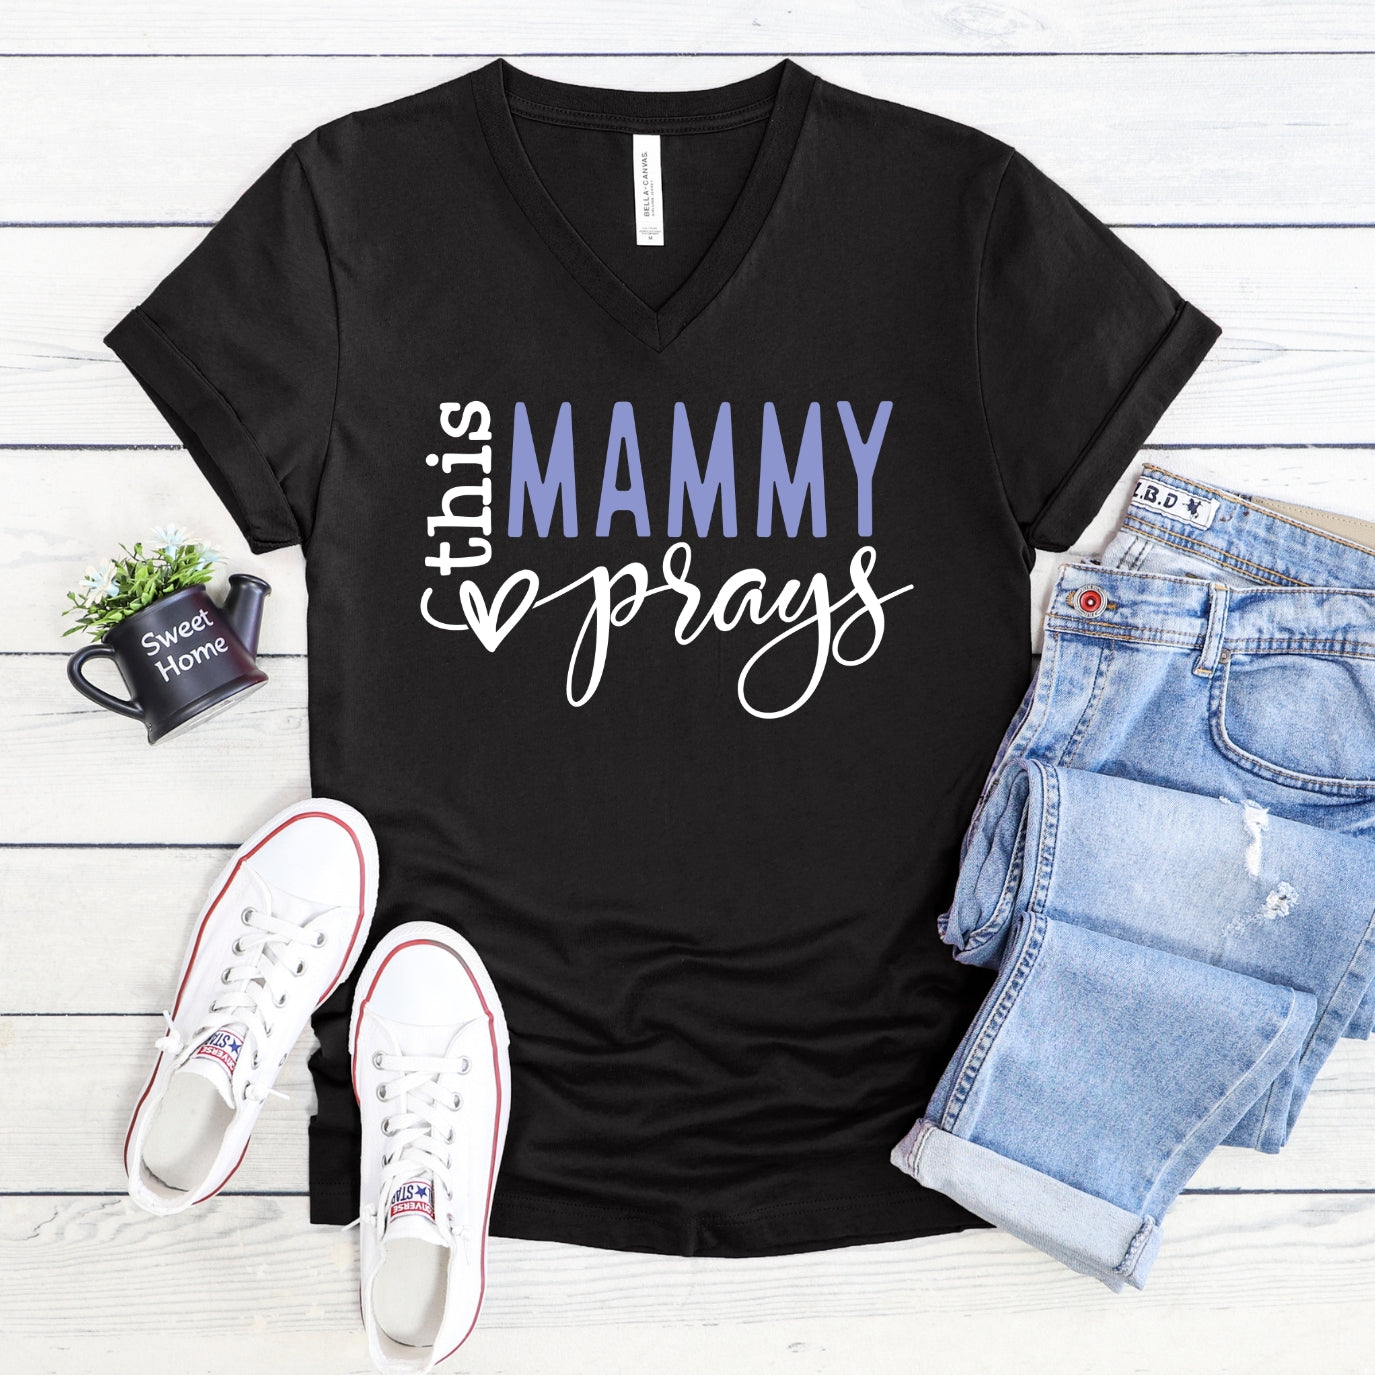 This Mammy Prays Women's V-Neck Shirt